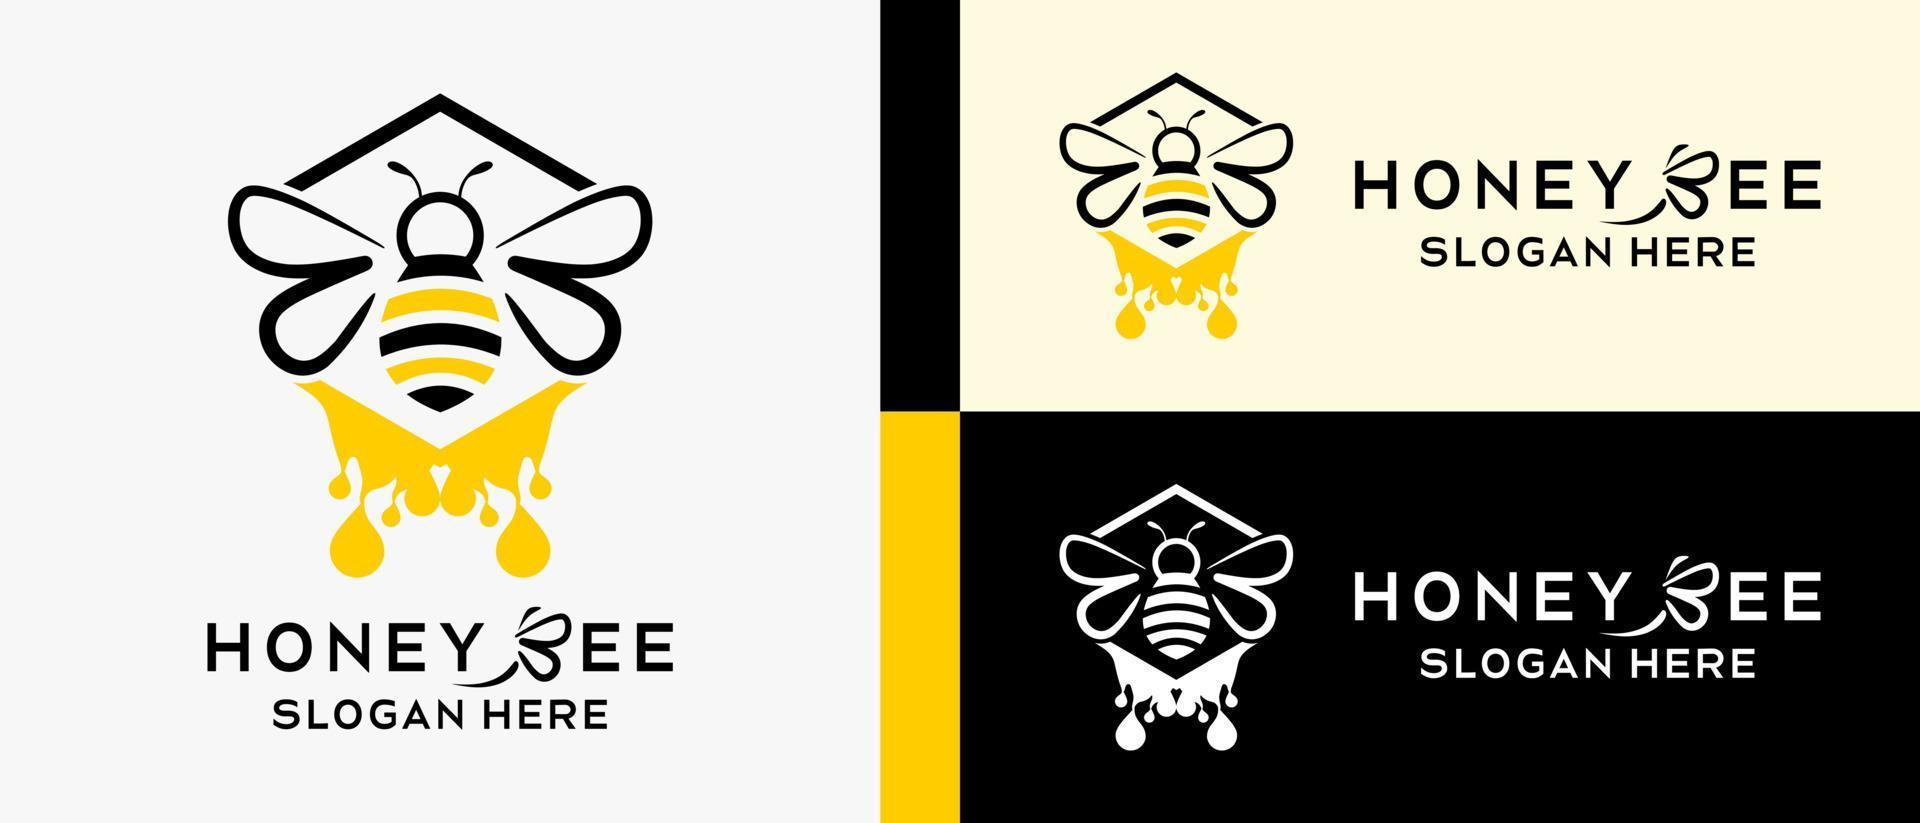 Honigbienenlogo-Designvorlage mit kreativem Konzept von Bienen- und Honigtropfenelementen. Premium-Vektor-Logo-Illustration vektor